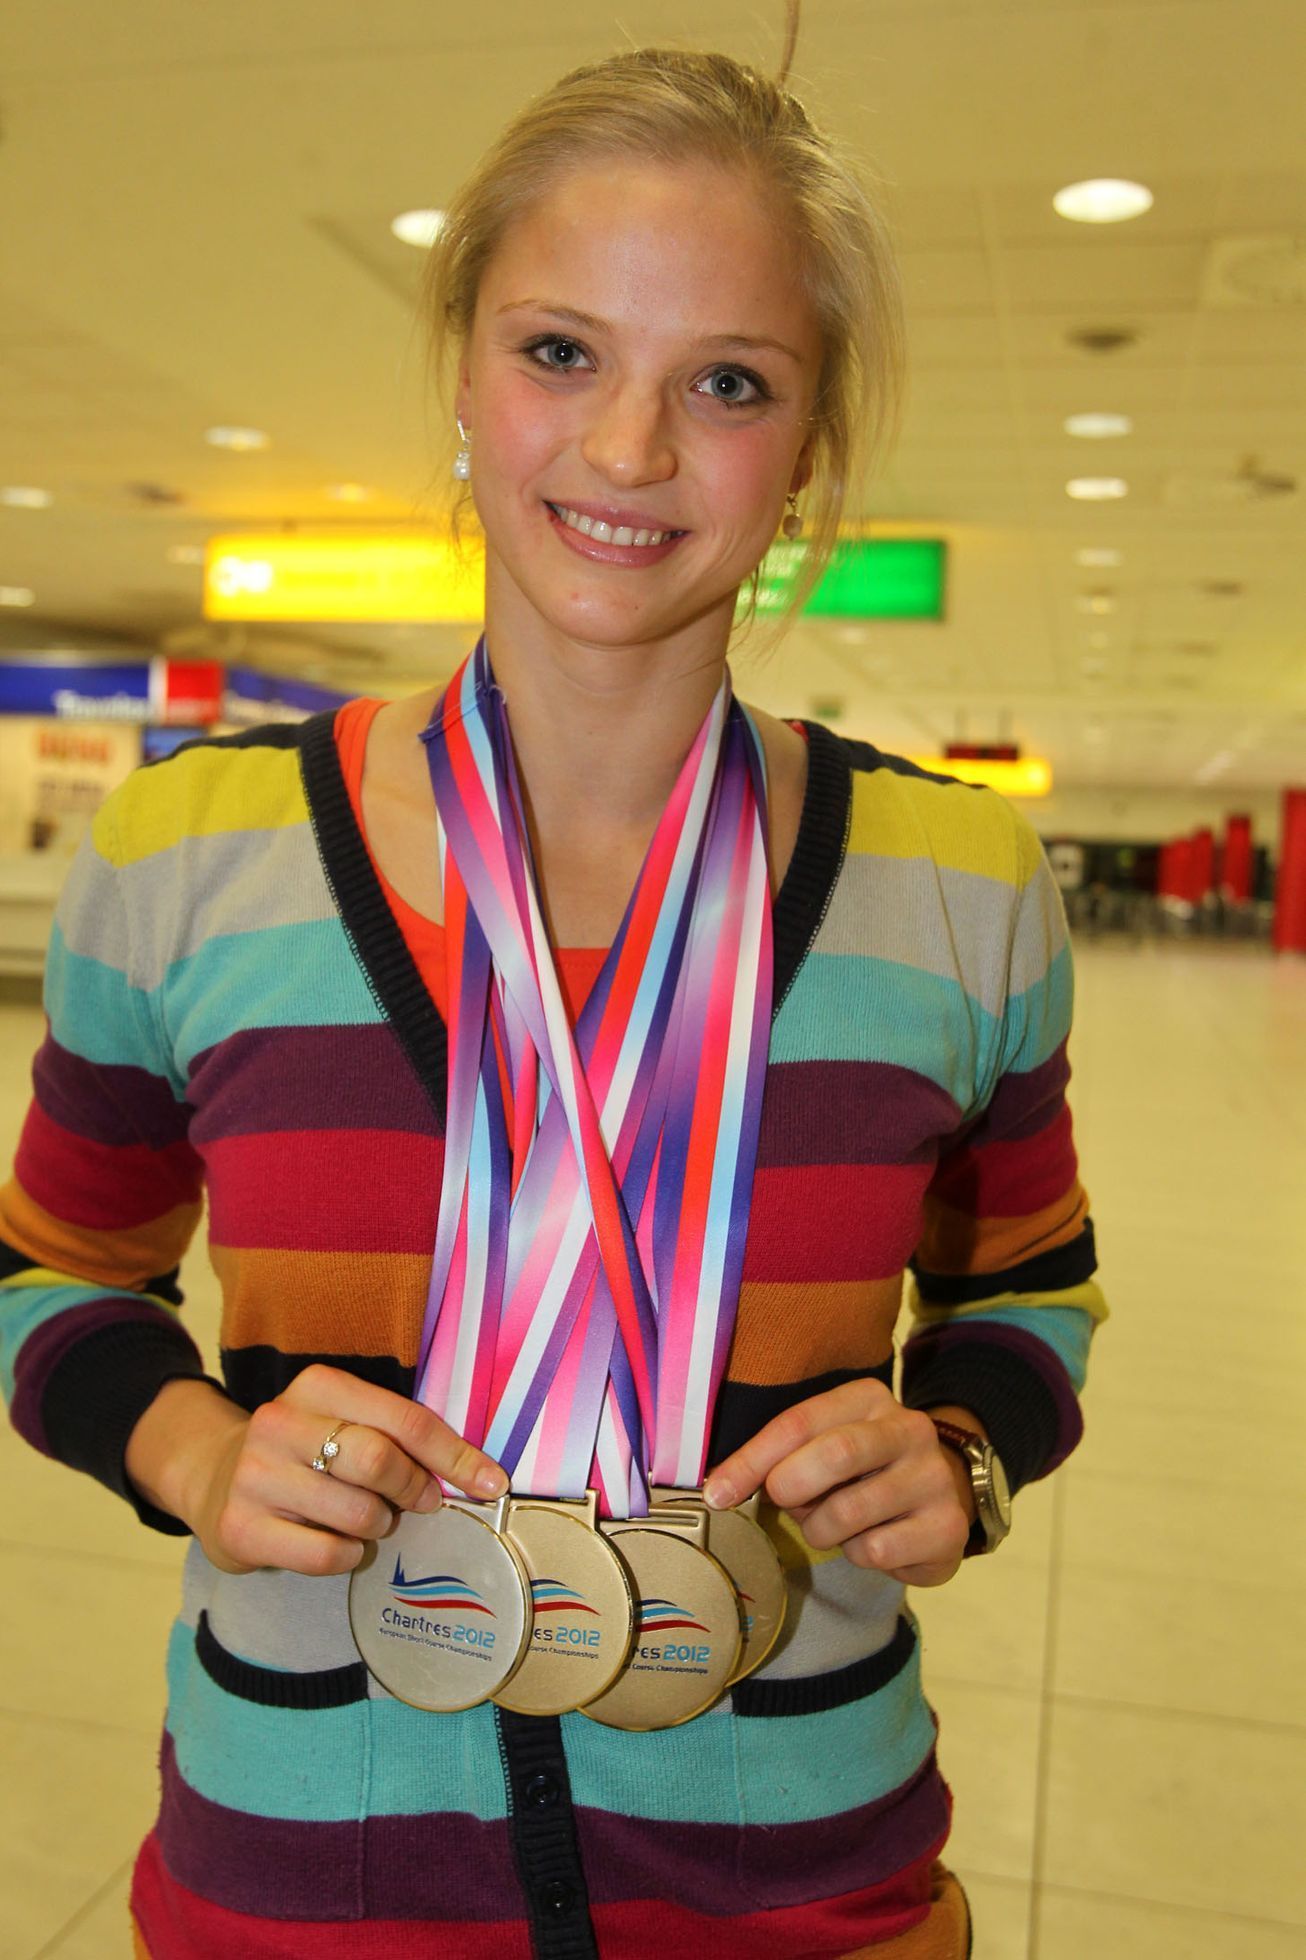 České plavkyně na letišti po příletu z ME v Chartres 2012.